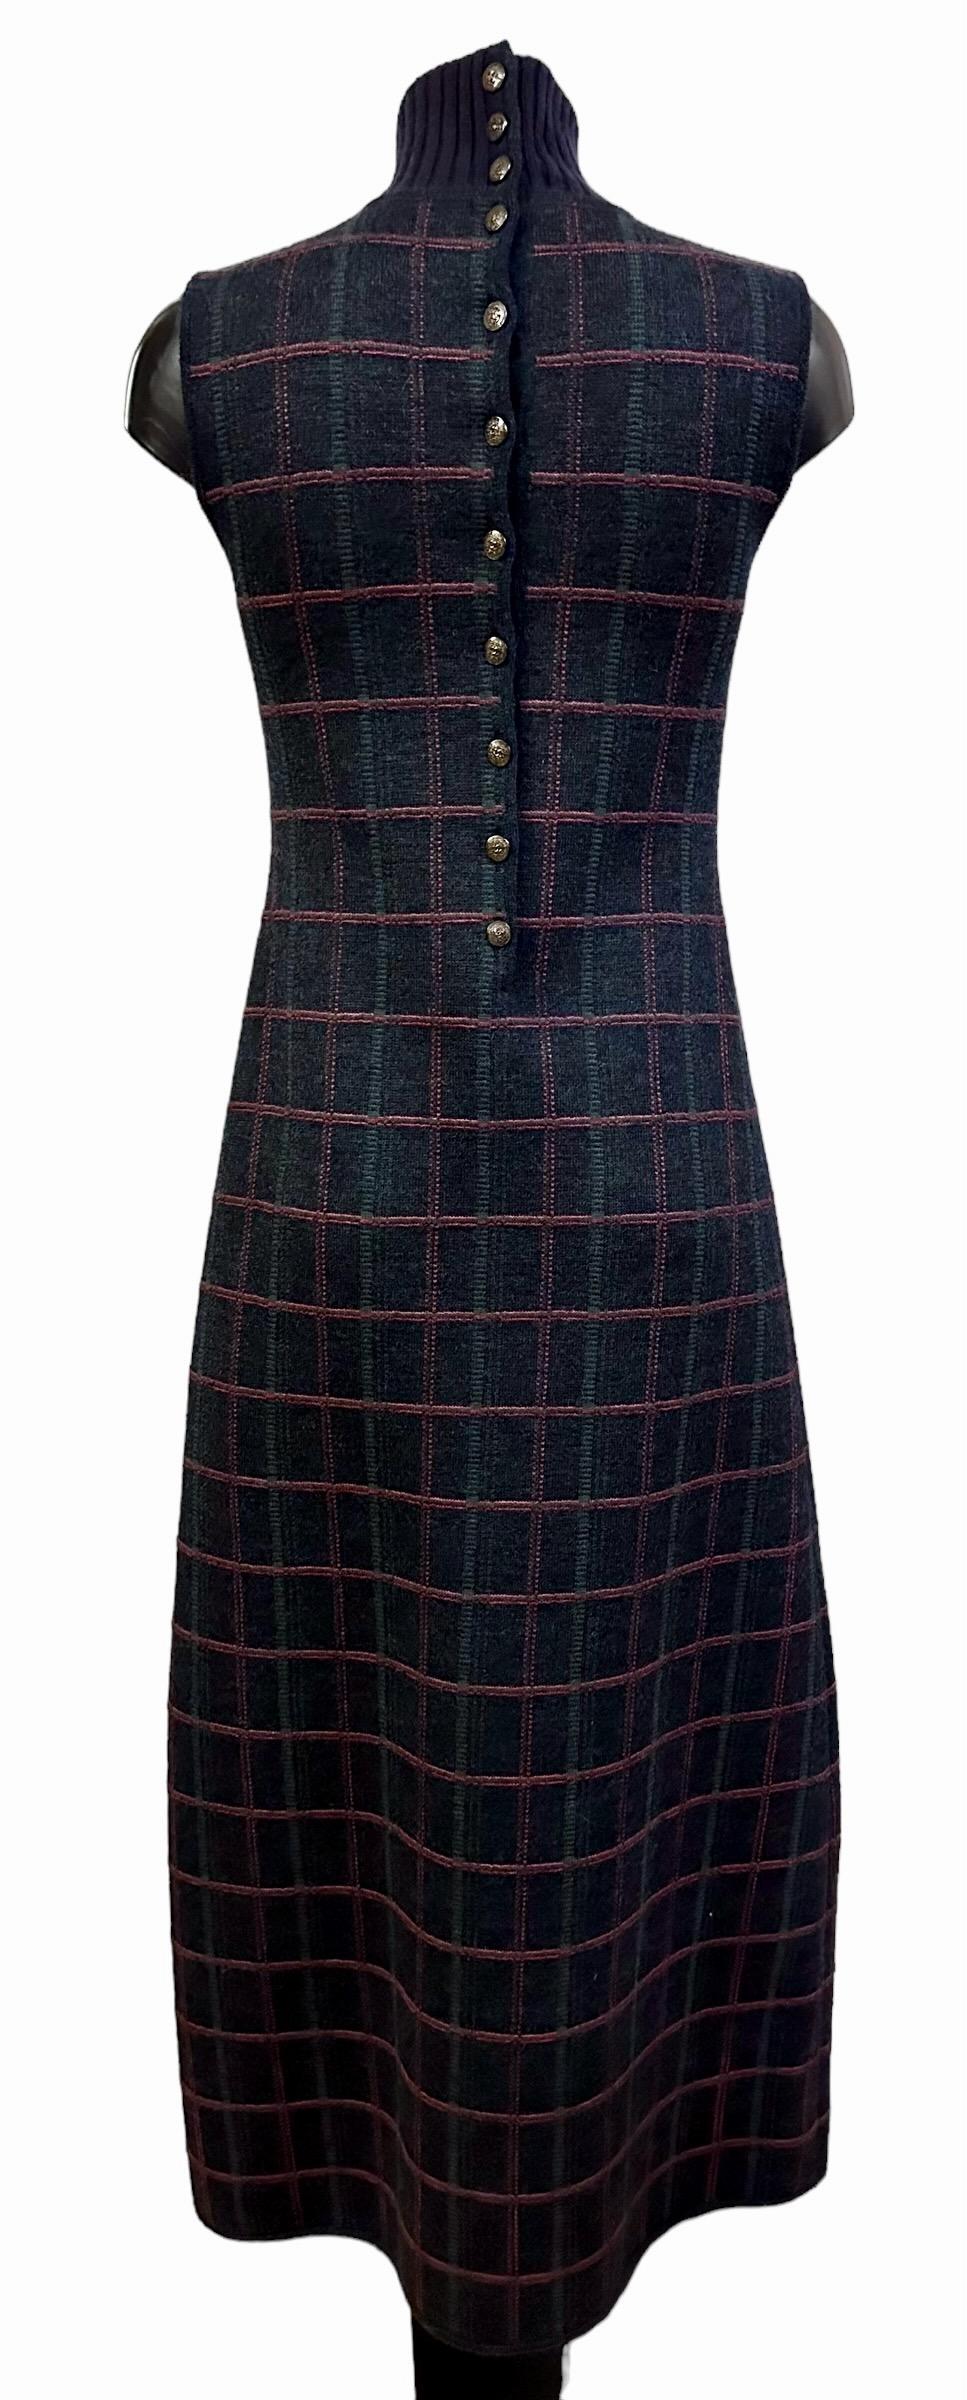 Robe maxi immaculée de la collection Chanel des Métiers d'Art Paris Edinburgh 2012 / 2013.
Confectionnée dans un tweed à motif écossais, cette robe est parfaite dans sa simplicité.

Collectional : Métiers d'Art Paris Edinburgh 2012/2013
Fabrice :